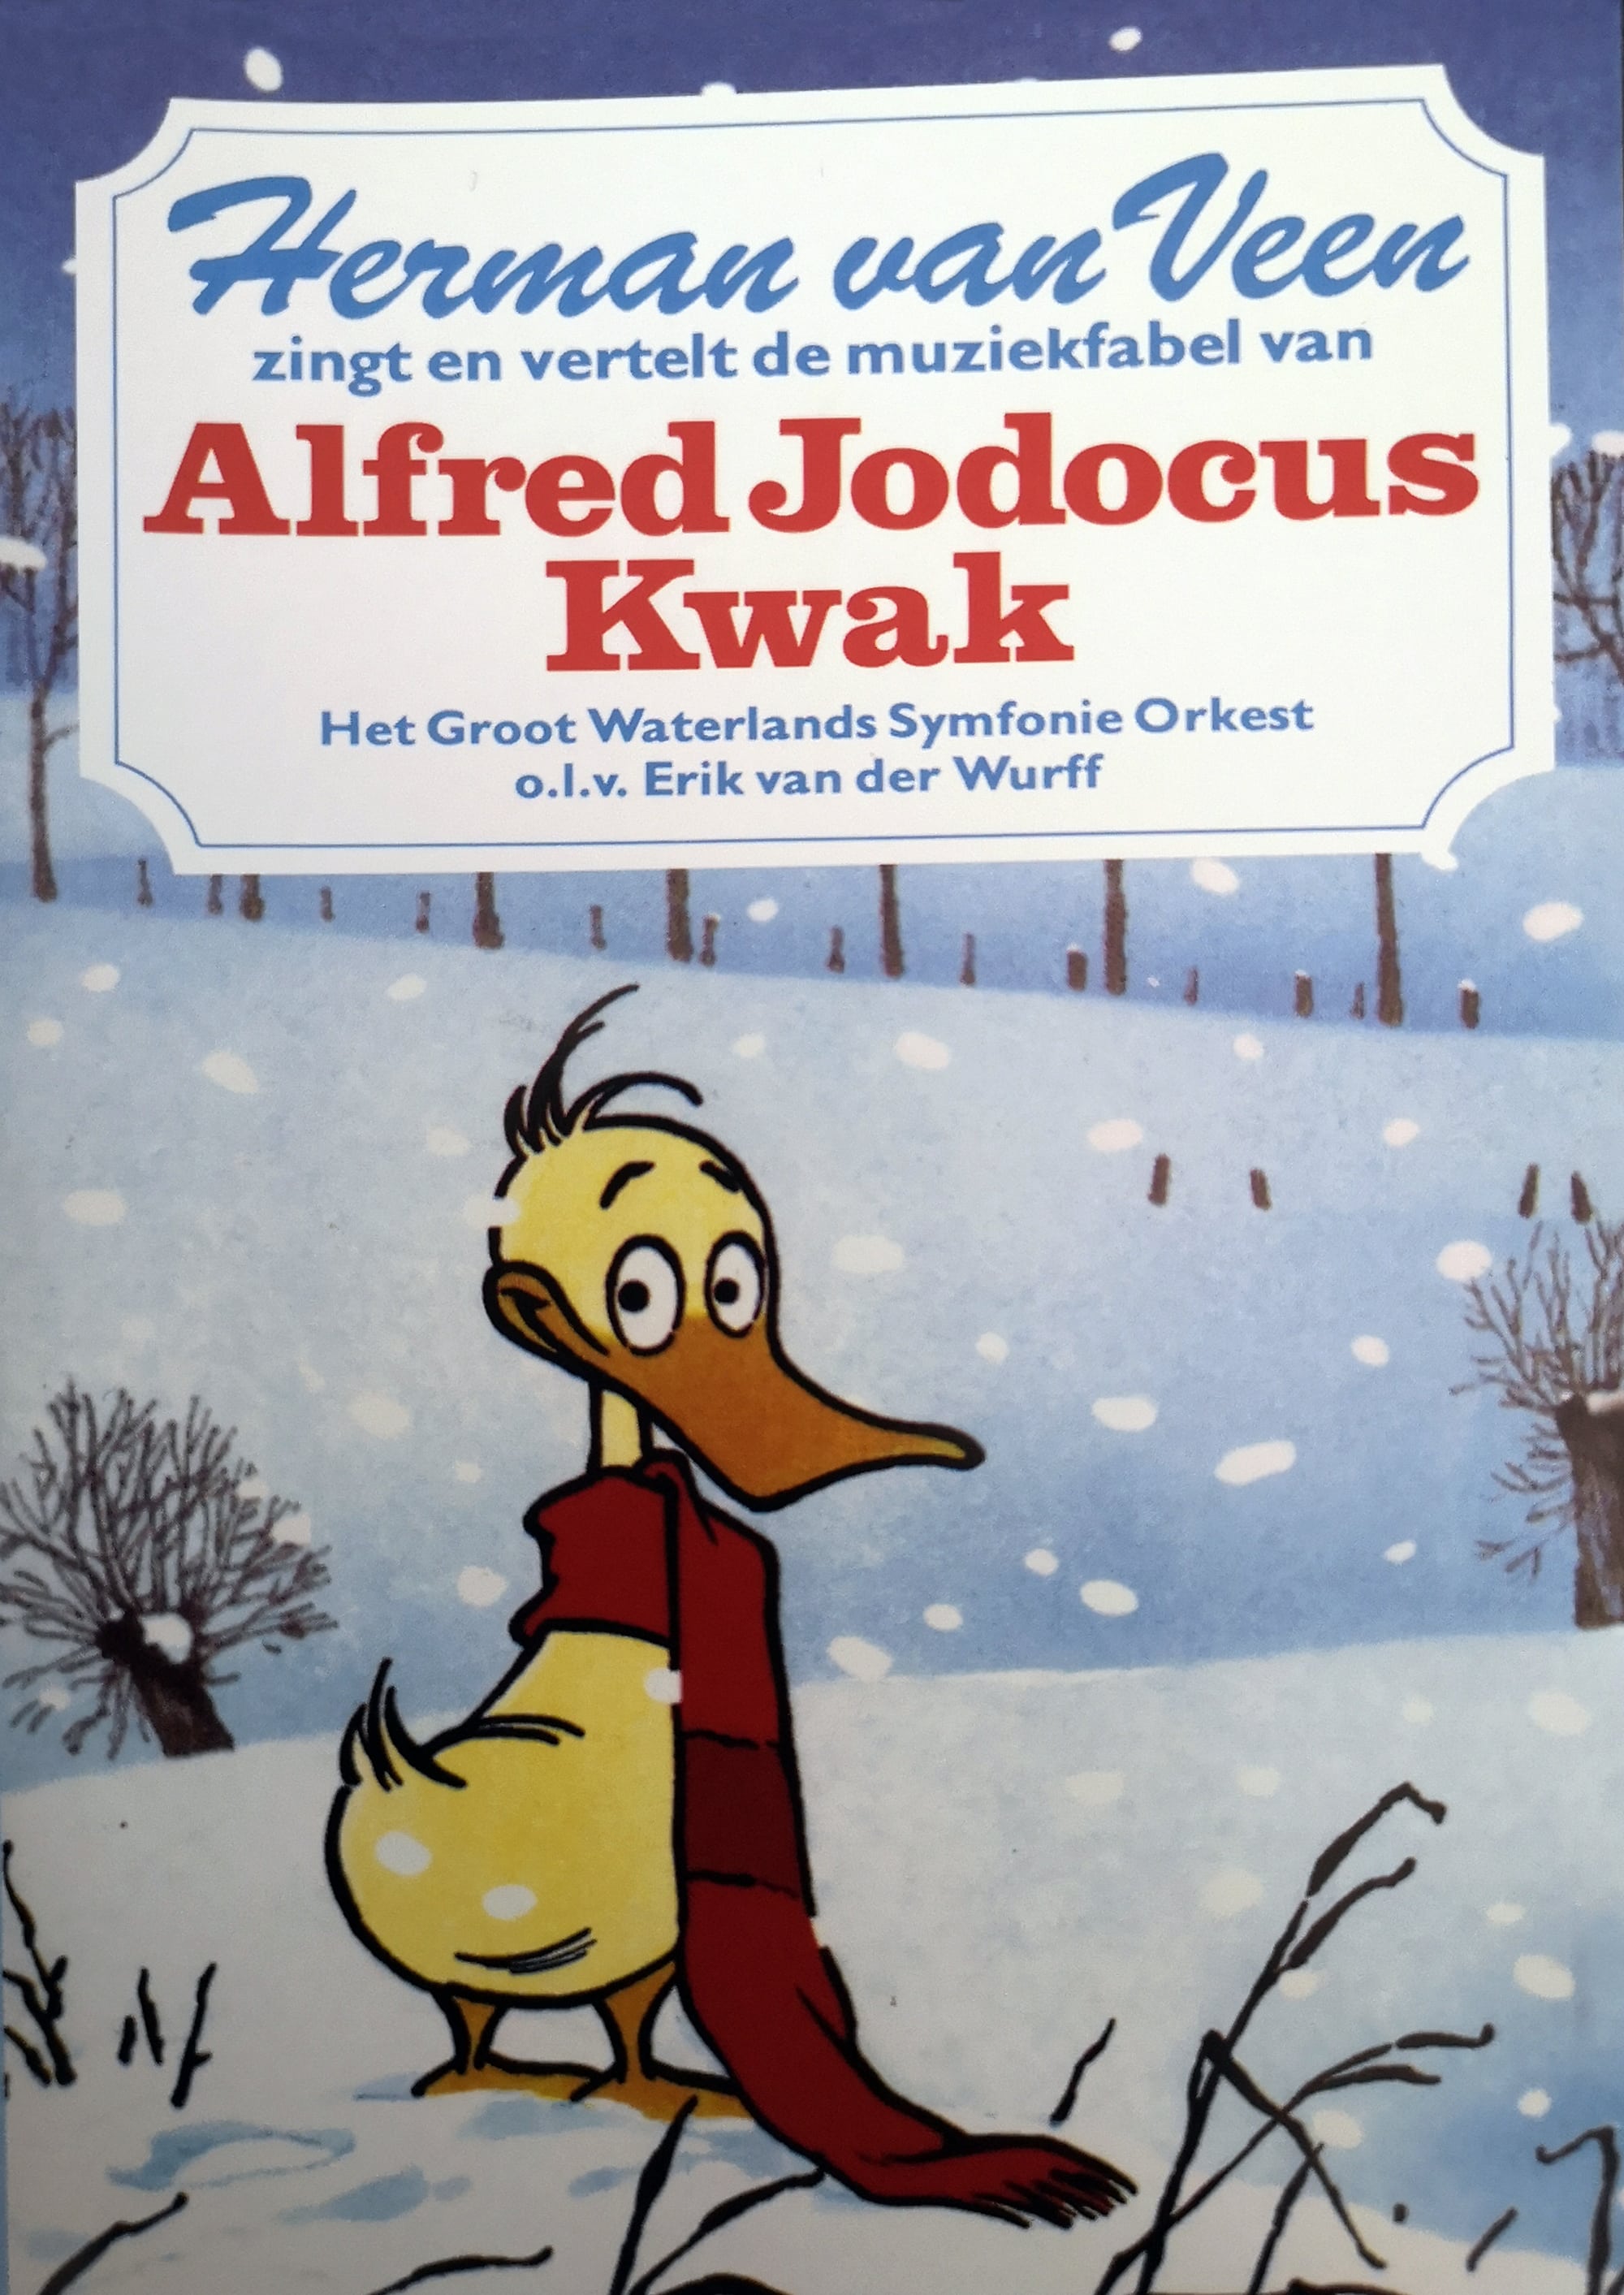 Herman van Veen zingt en vertelt de muziekfabel van Alfred Jodocus Kwak